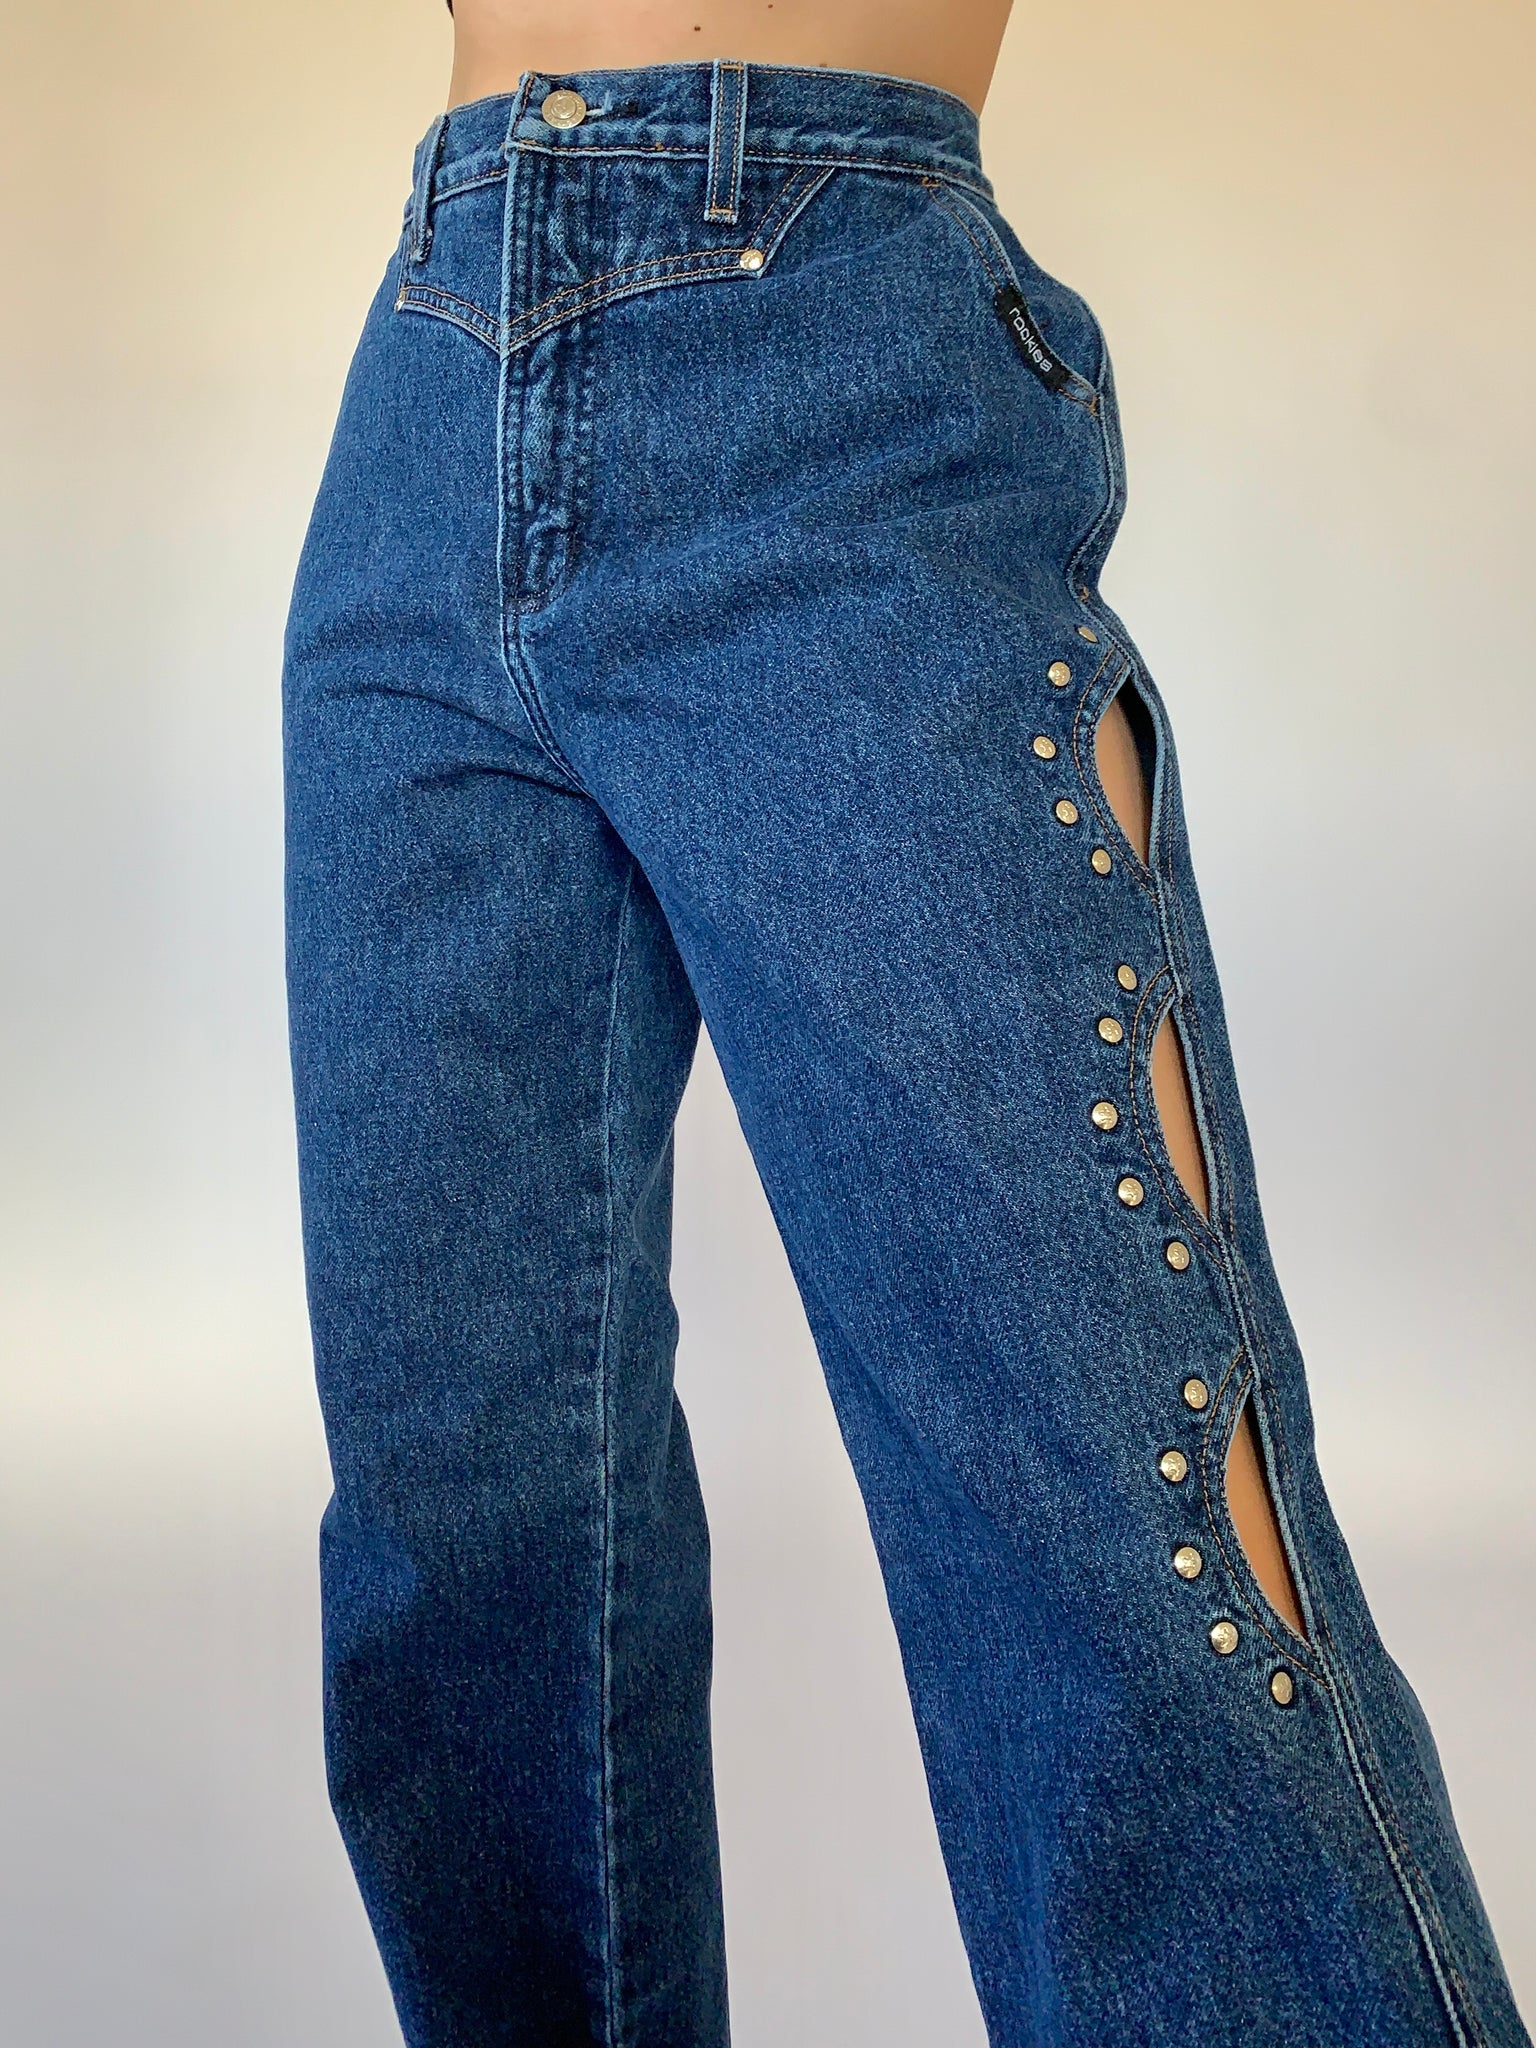 Vintage 1980s Rockies Jeans – Hazy Vintage